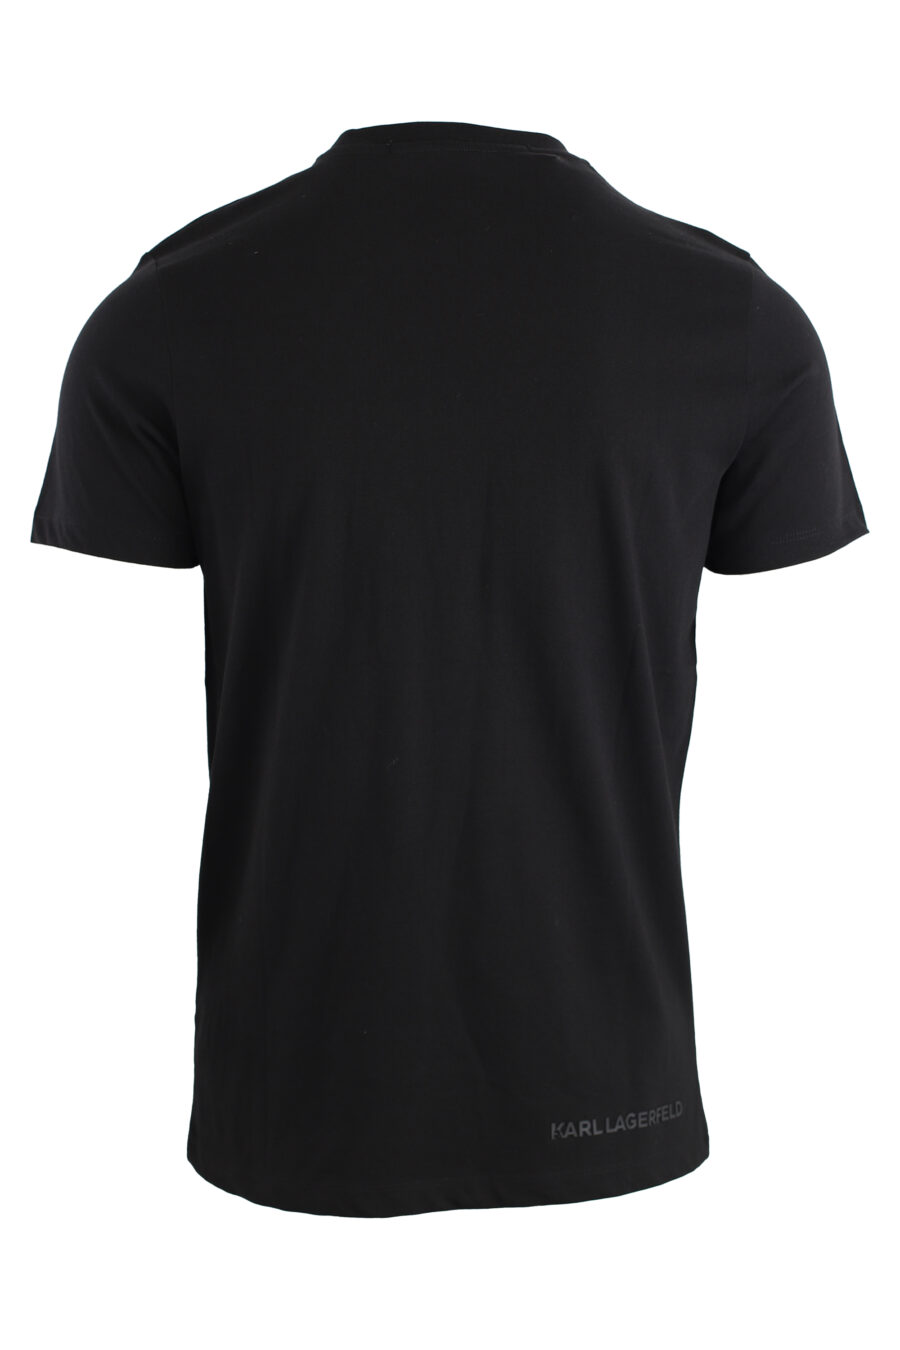 Schwarzes T-Shirt mit blauem Metallic-Logo - IMG 7551